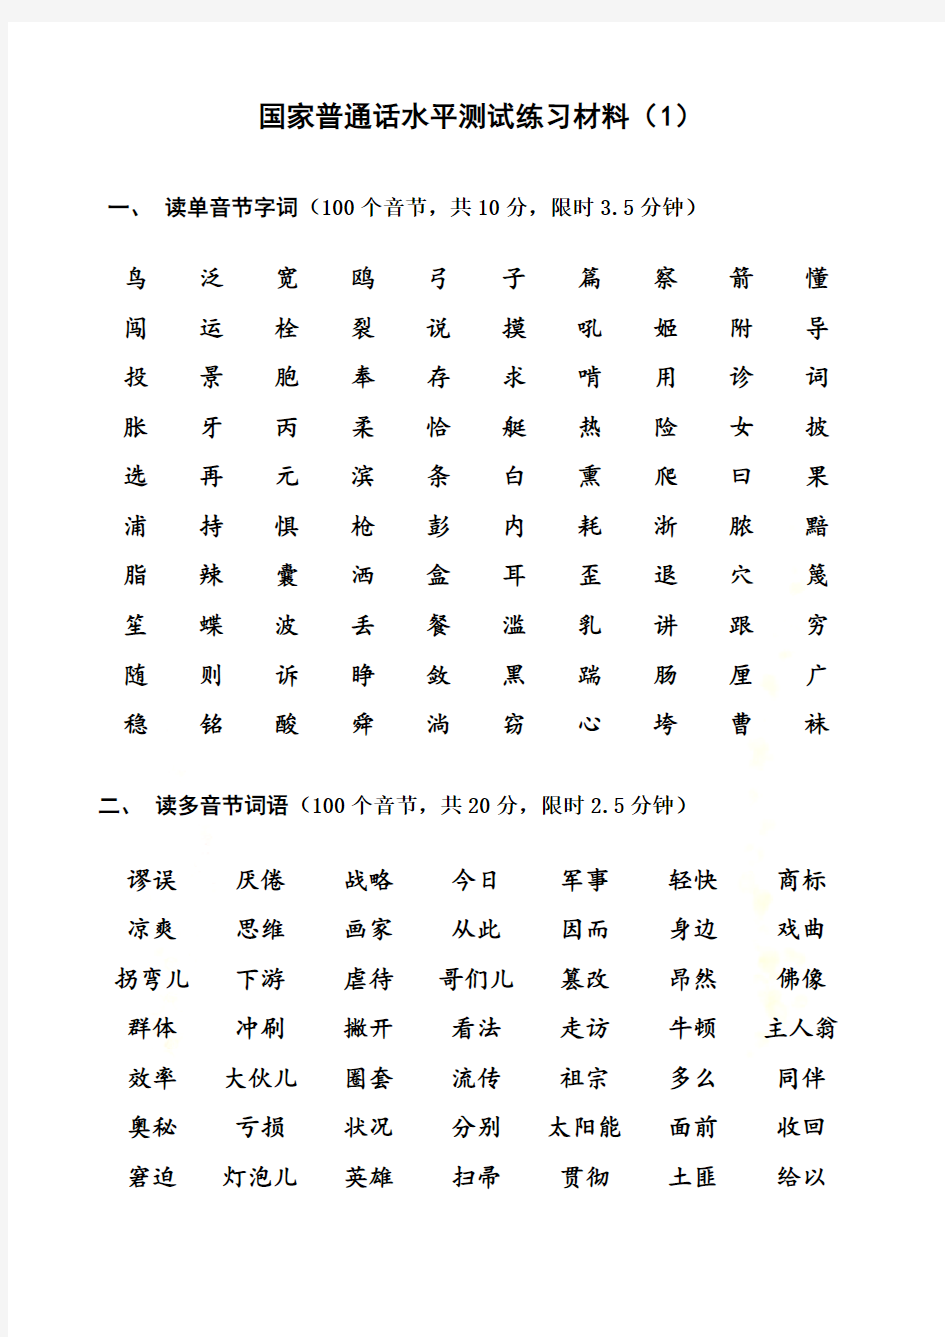 普通话水平测试练习材料(1-20)